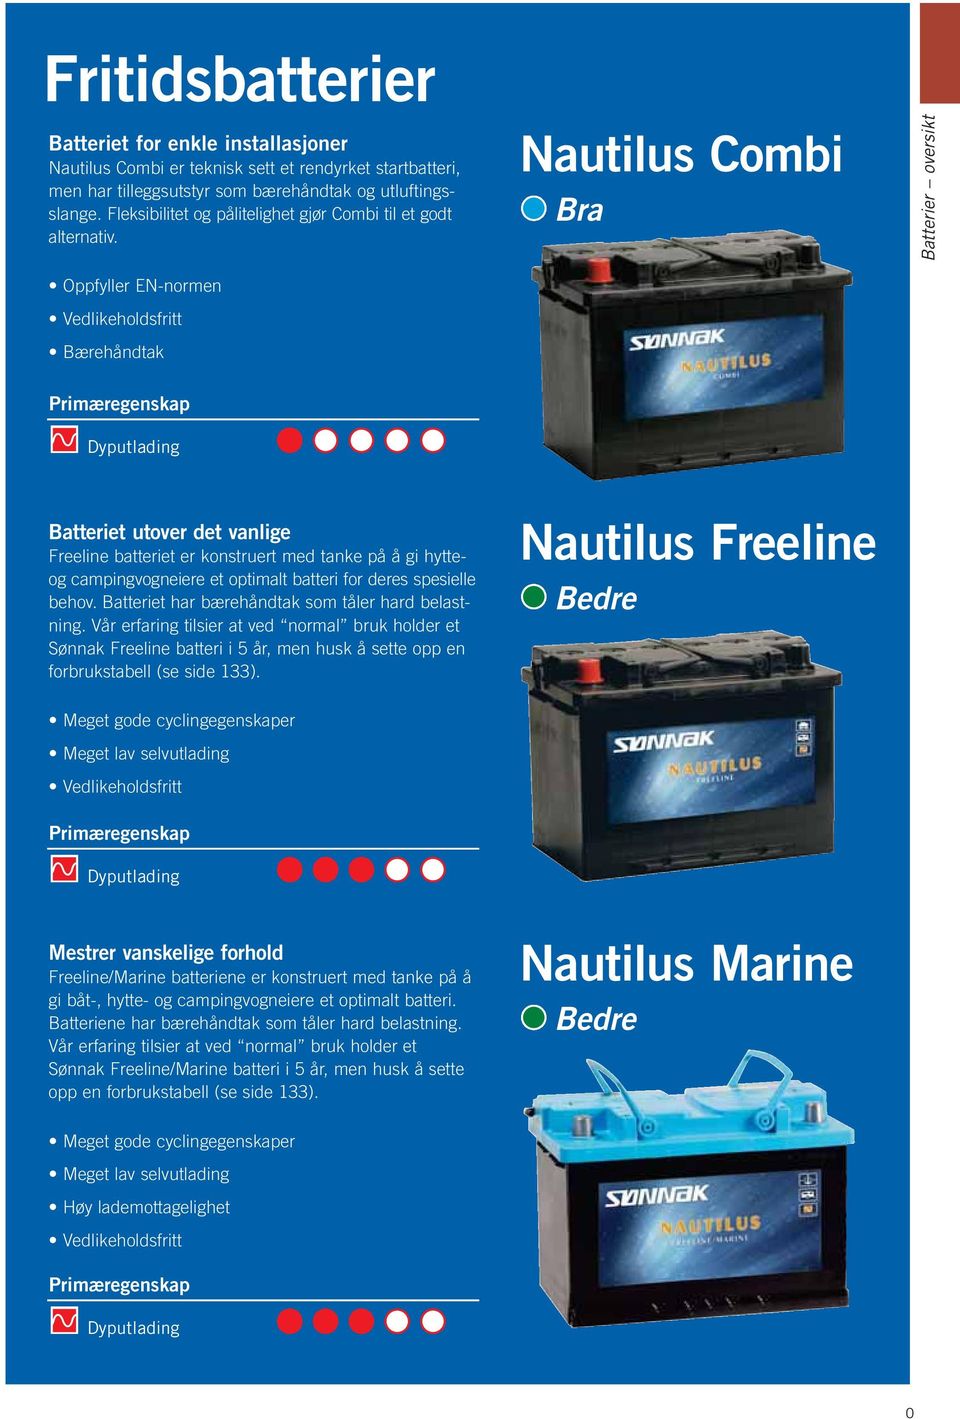 Nautilus Combi Bra Batterier oversikt Oppfyller EN-normen Vedlikeholdsfritt Bærehåndtak Primæregenskap Dyputlading Batteriet utover det vanlige Freeline batteriet er konstruert med tanke på å gi